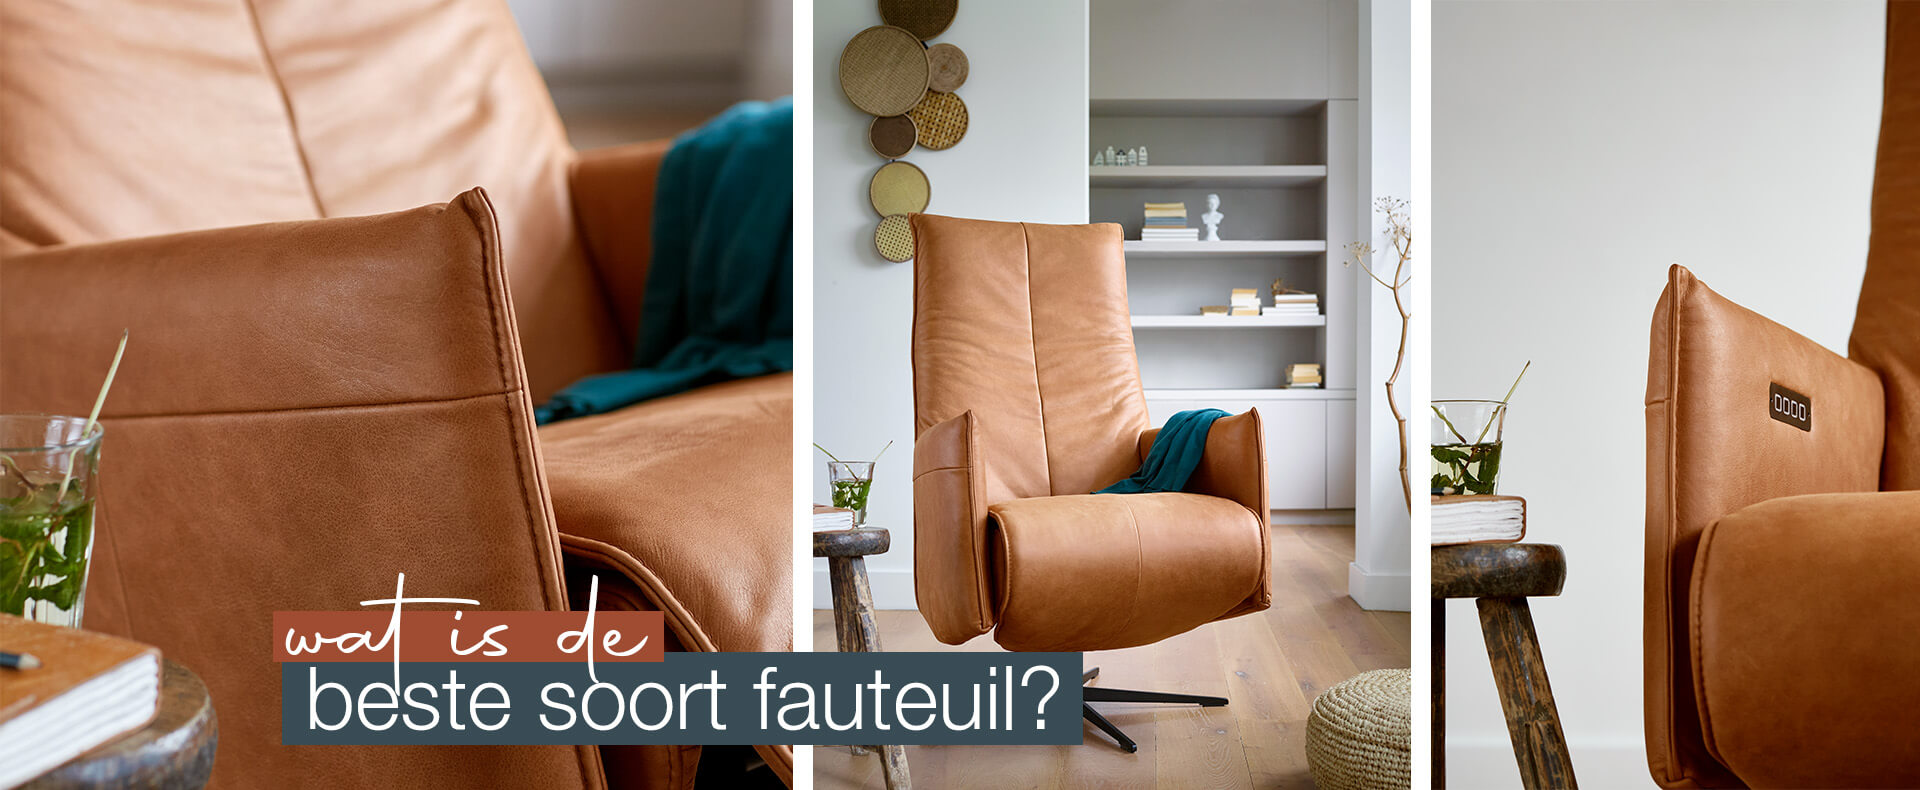 Wat is de beste soort fauteuil? 